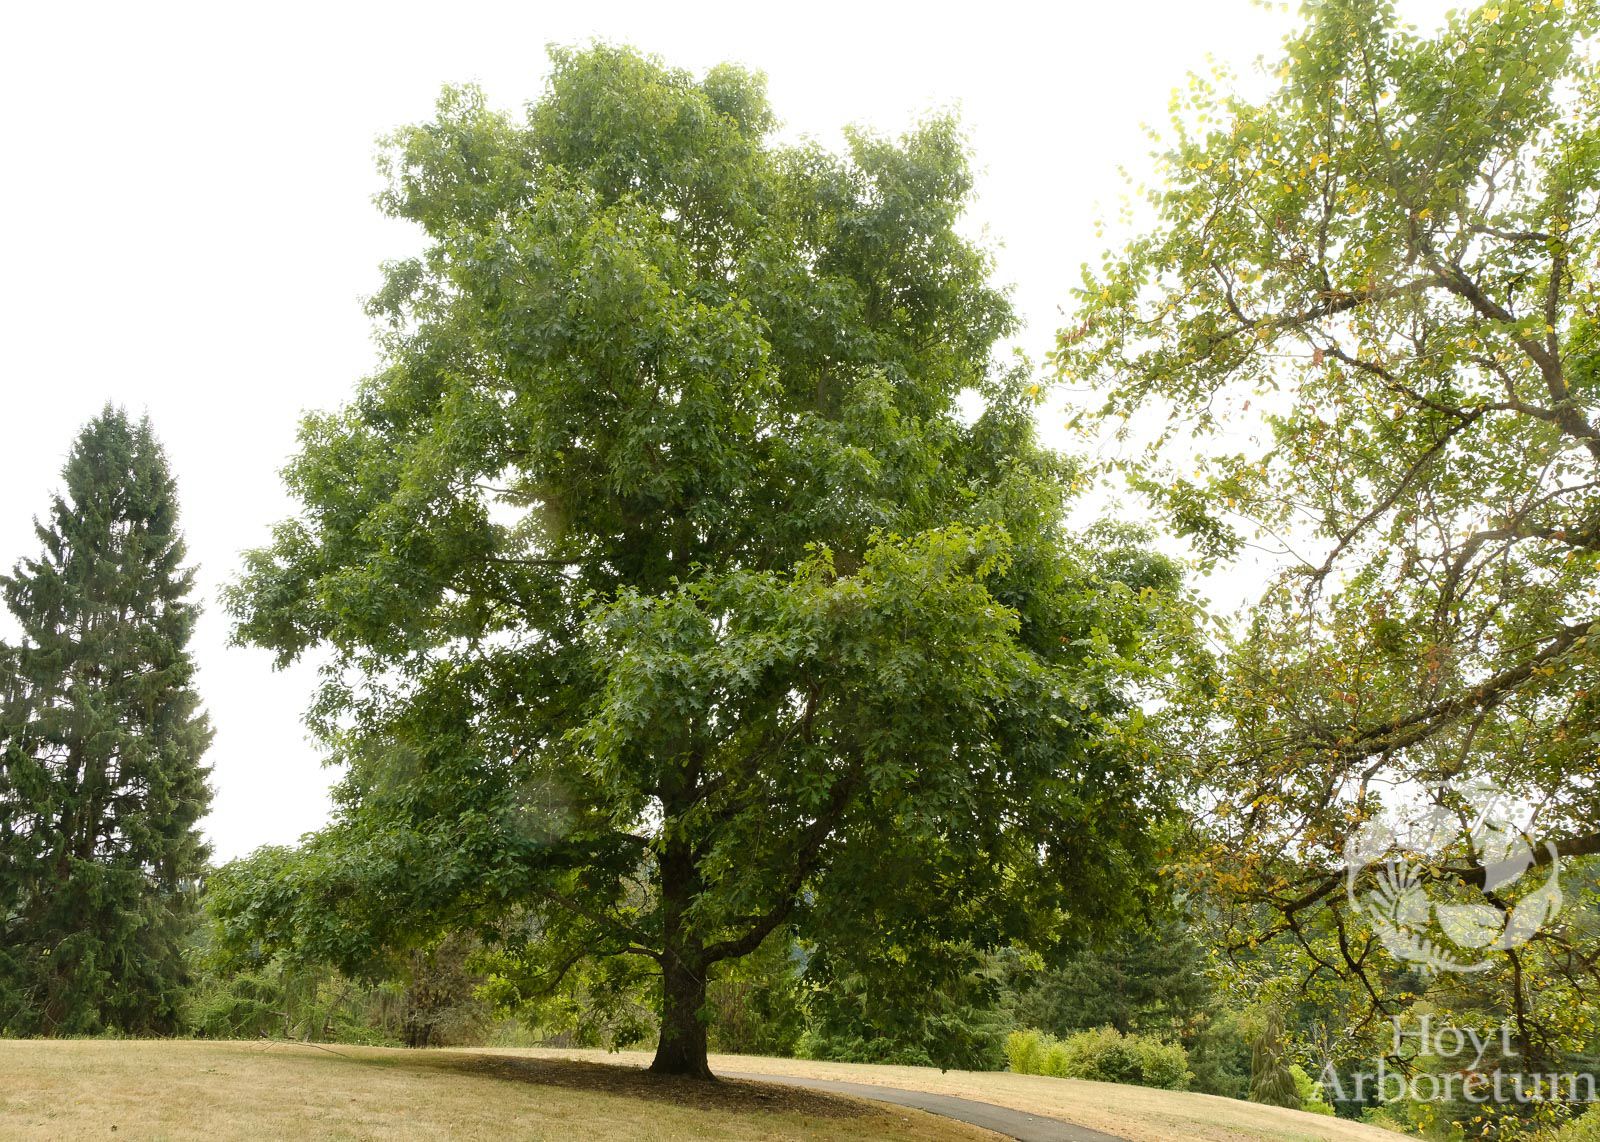 Quercus rubra - red oak, northern red oak